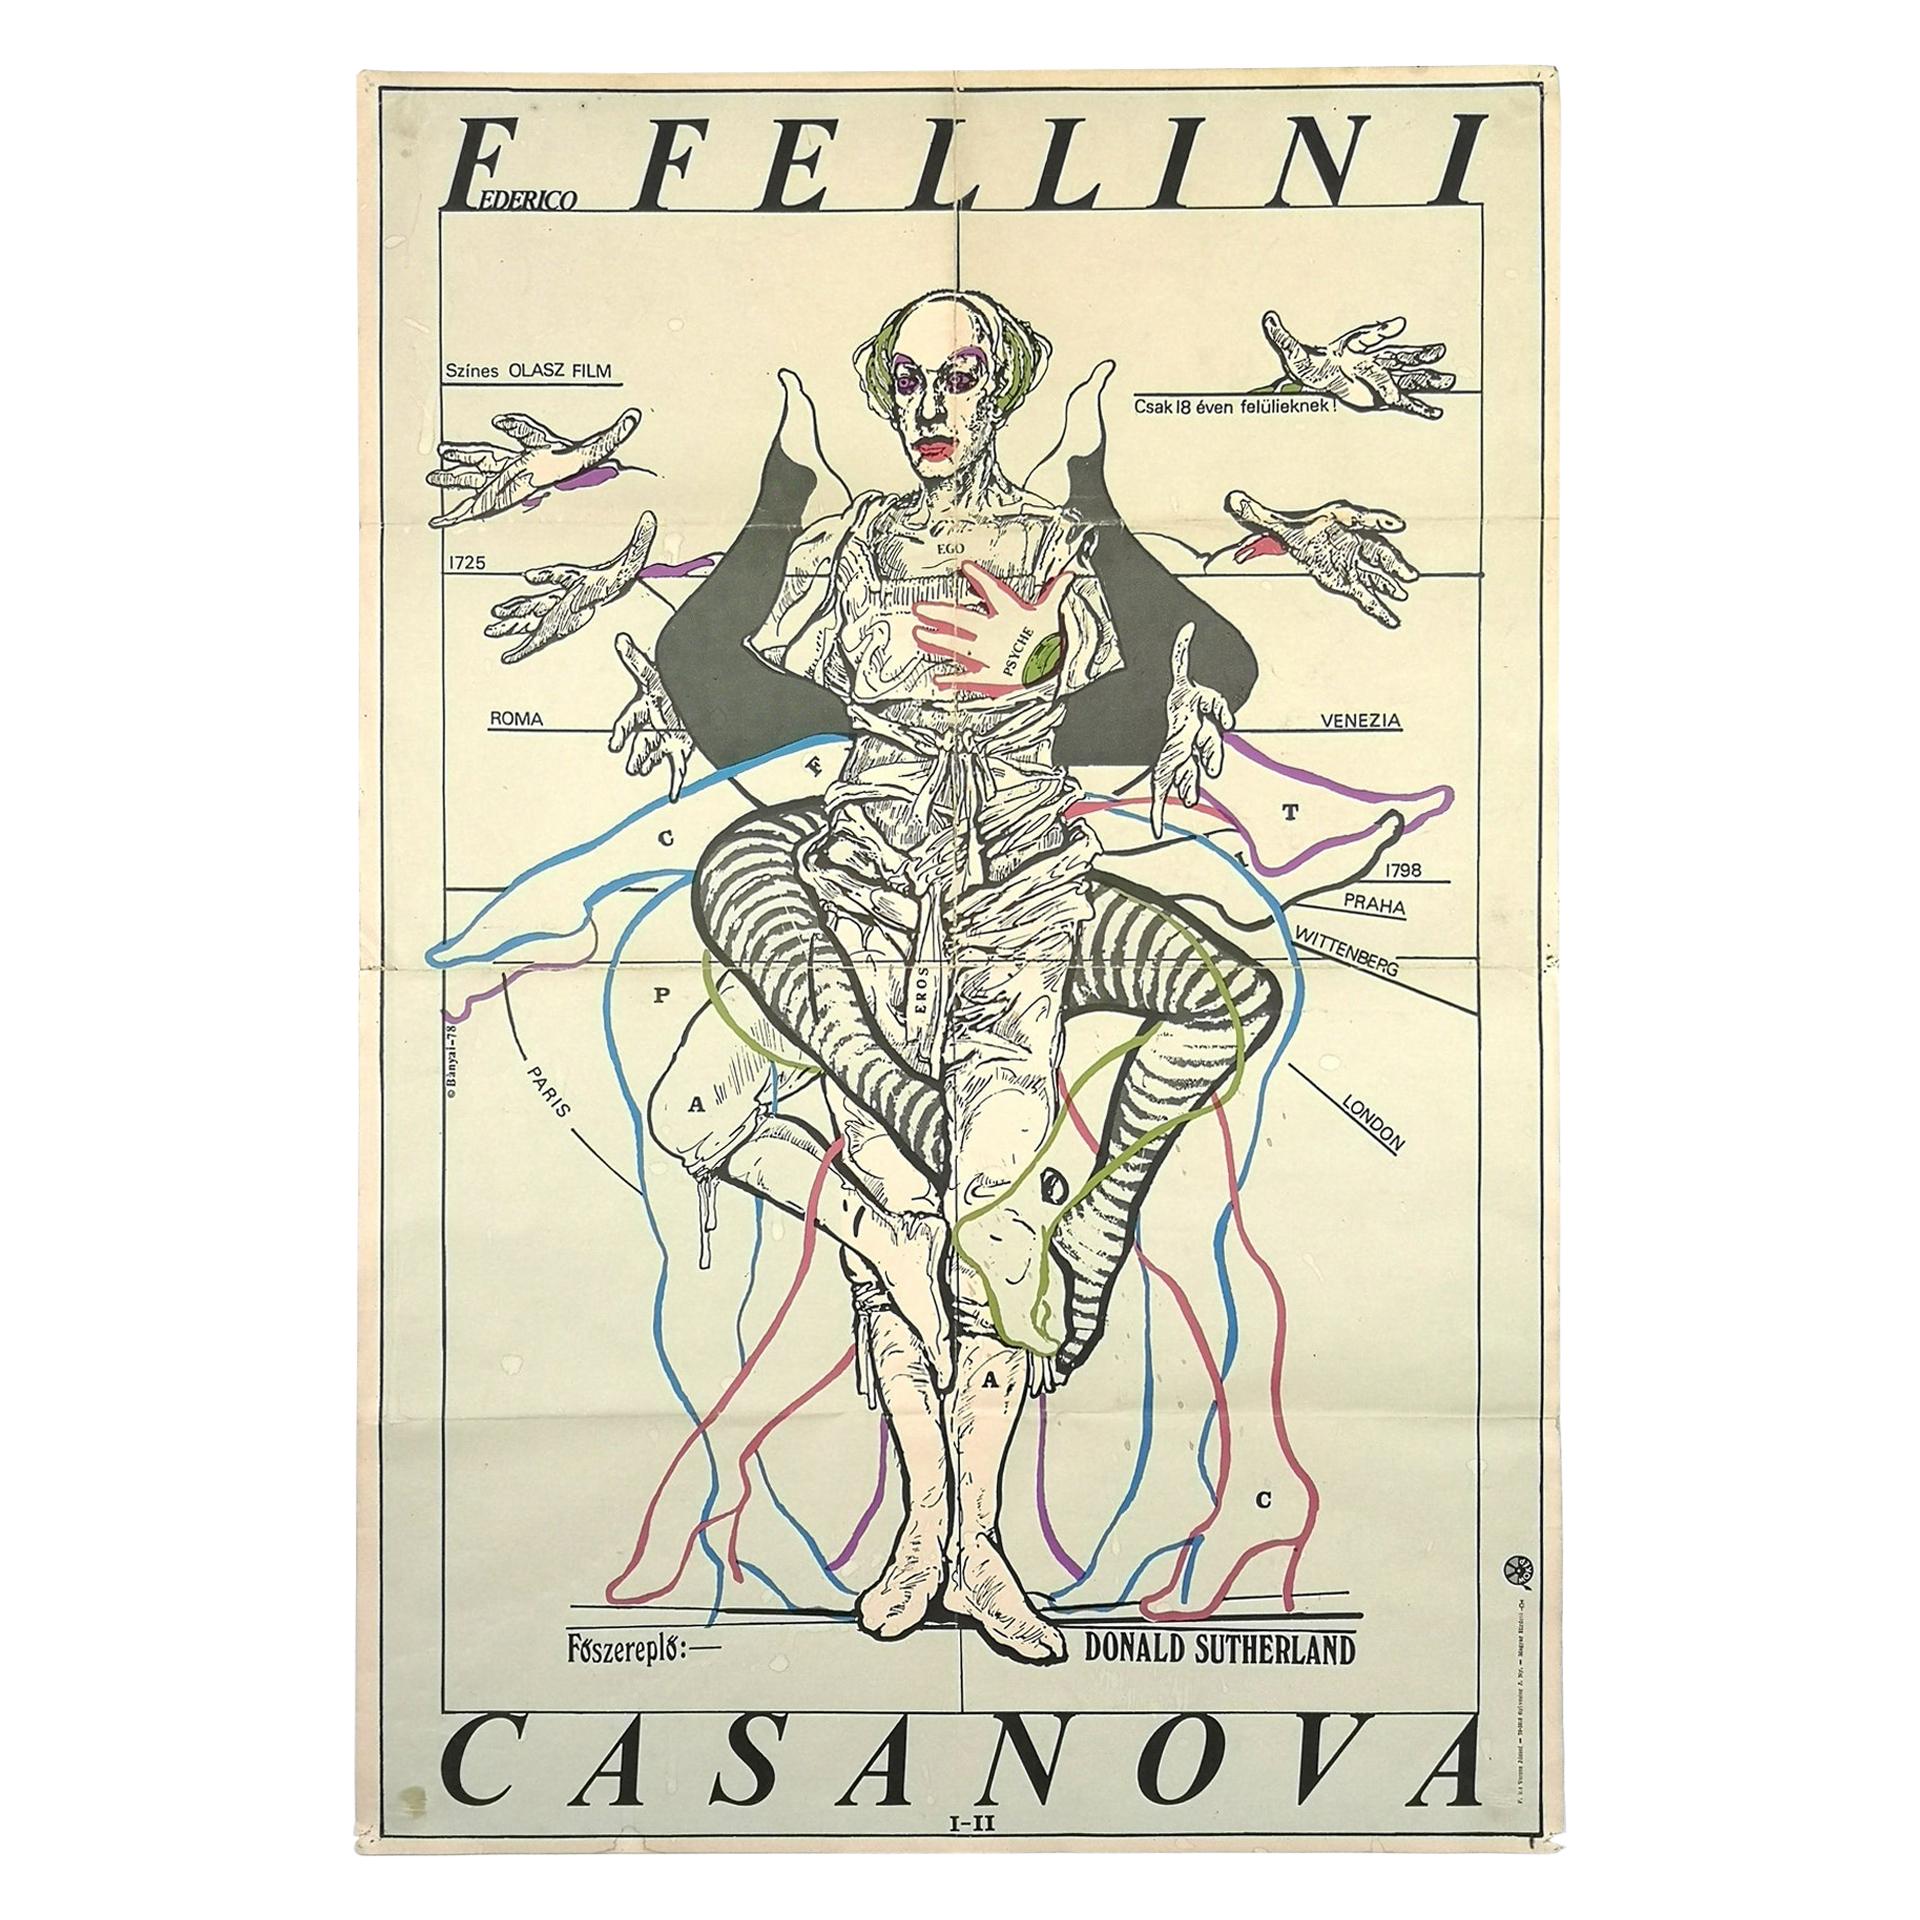 Rare Original 1979 Movie Poster for Casanova Di Federico Fellini